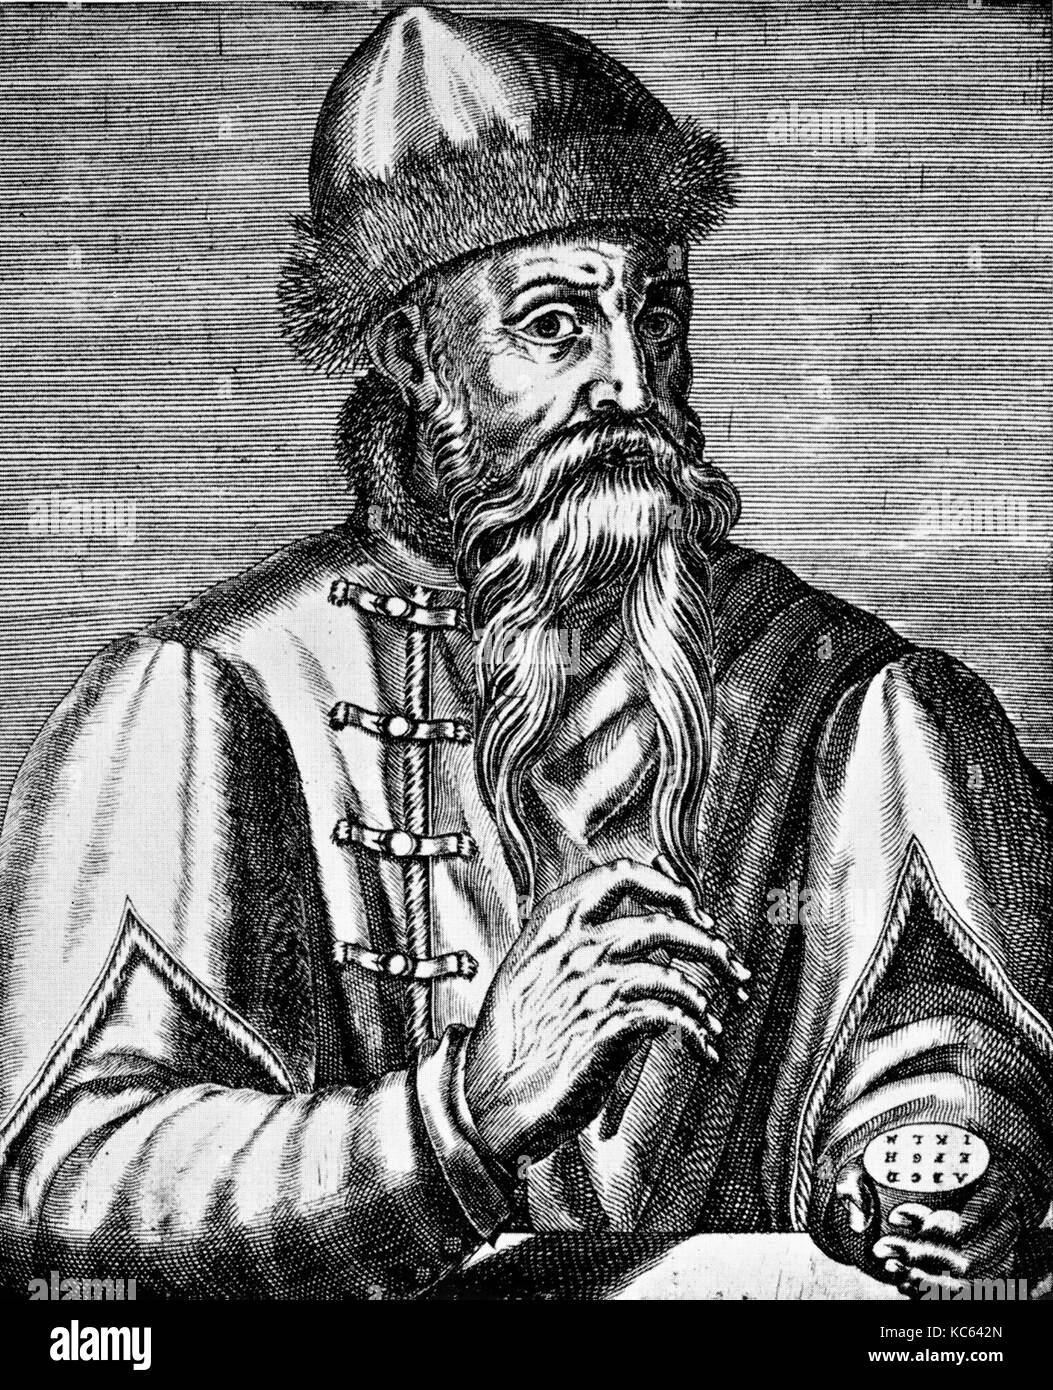 Johannes GUTENBERG (c 1400-1468) inventor alemán de la imprenta en un grabado del siglo XVI Foto de stock